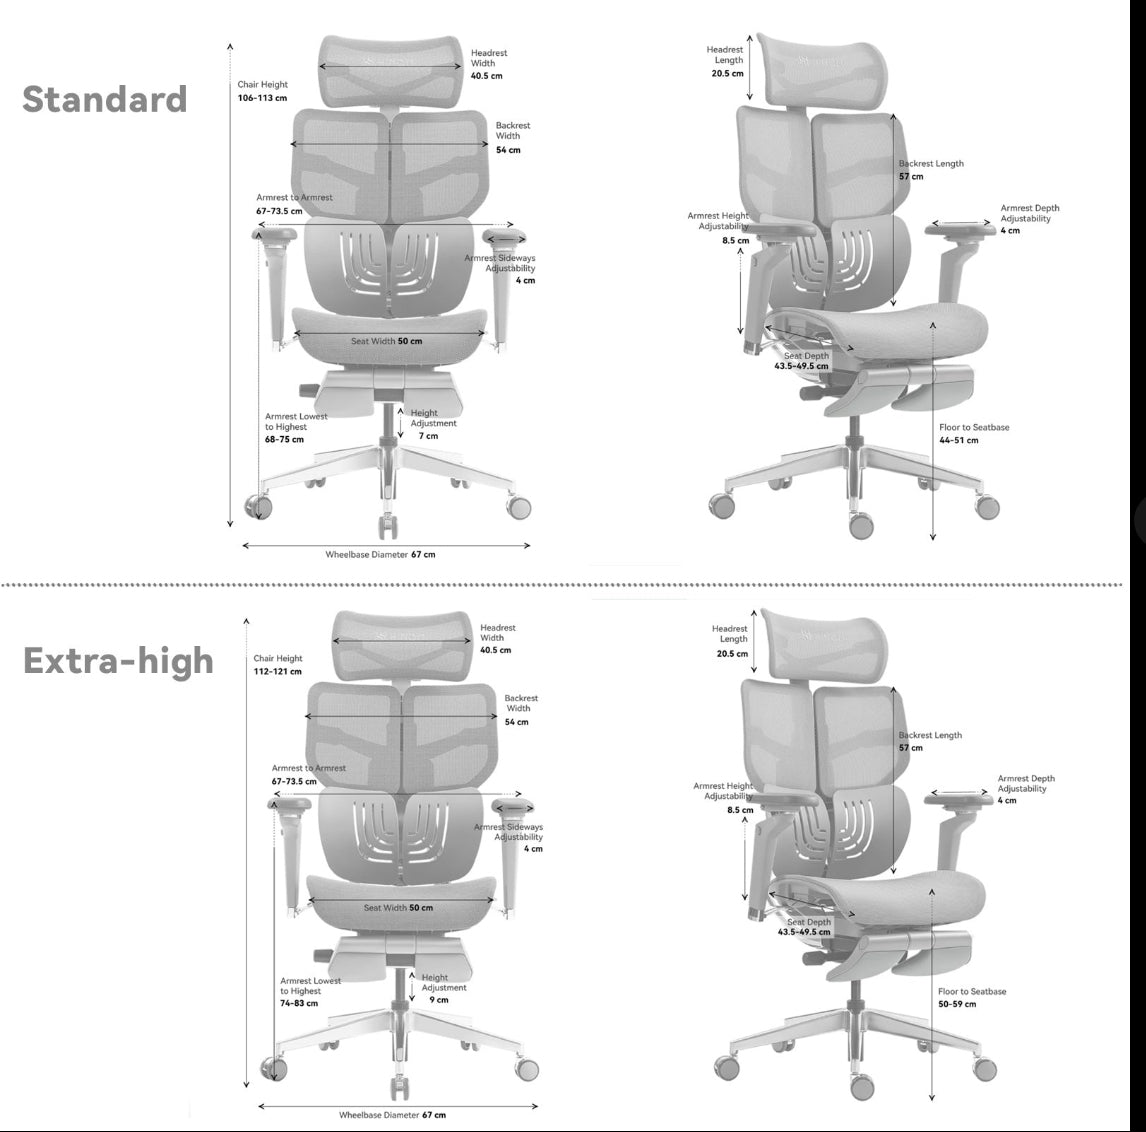 Chaise de bureau ergonomique X1